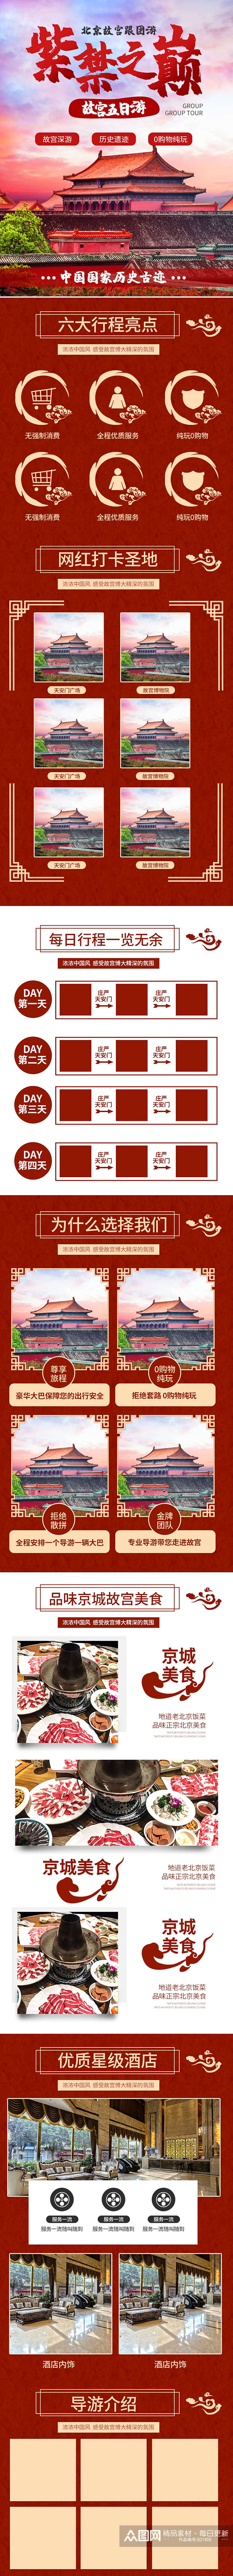 北京首都故宫旅游详情页素材